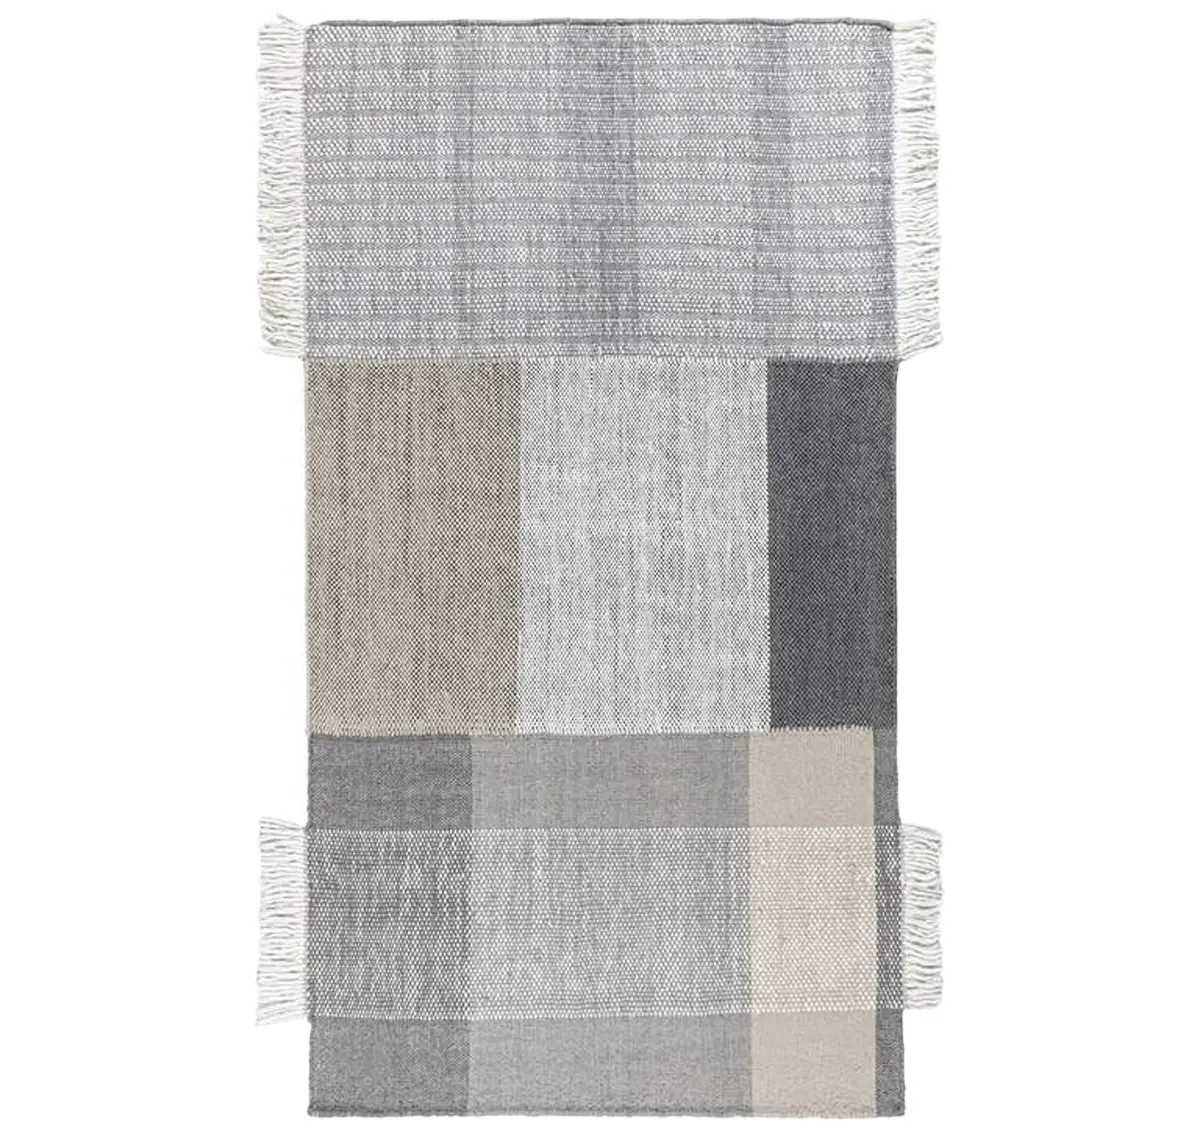 Vente en gros 100% coton lavable abstrait noir blanc motif tapis authentique brodé Design Home Textile utiliser salon